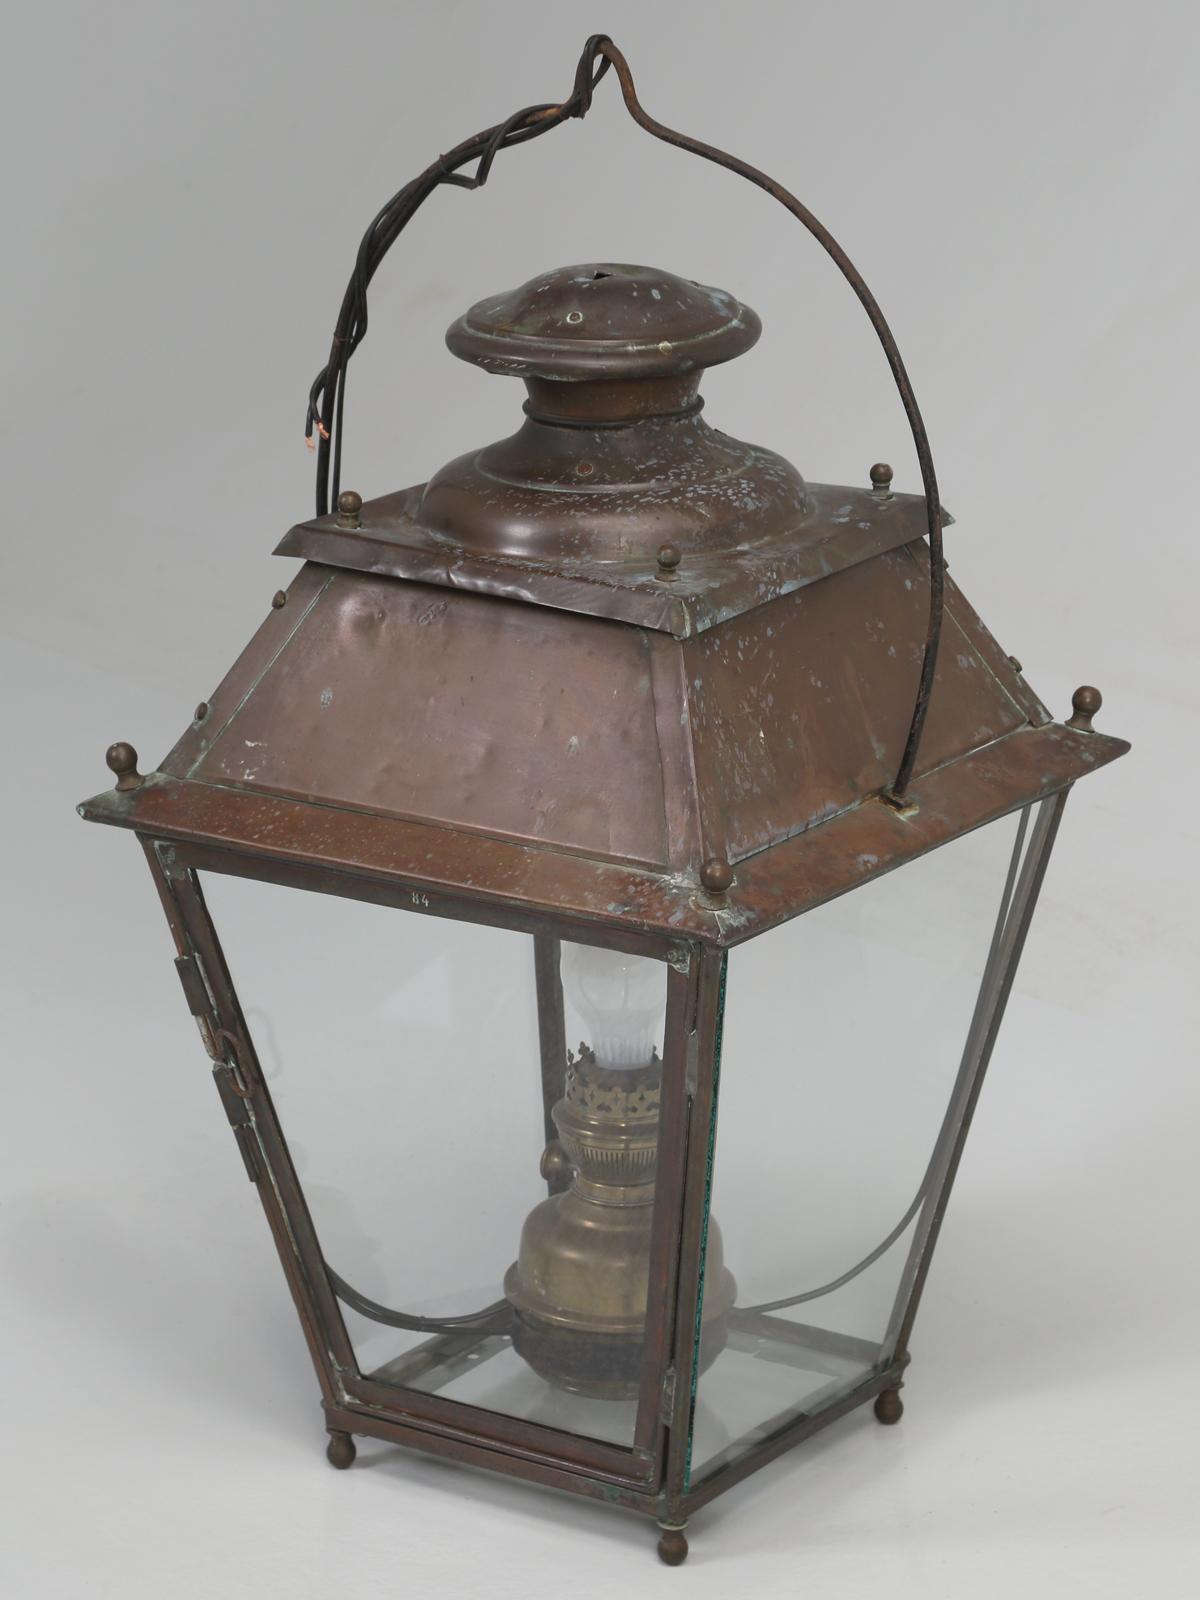 Lanterne ancienne en cuivre français, suffisamment ancienne pour avoir été éclairée à l'origine au kérosène. La lanterne ancienne en cuivre français a été convertie à l'électricité et nous pouvons l'adapter pour utiliser une ampoule candélabre ou la